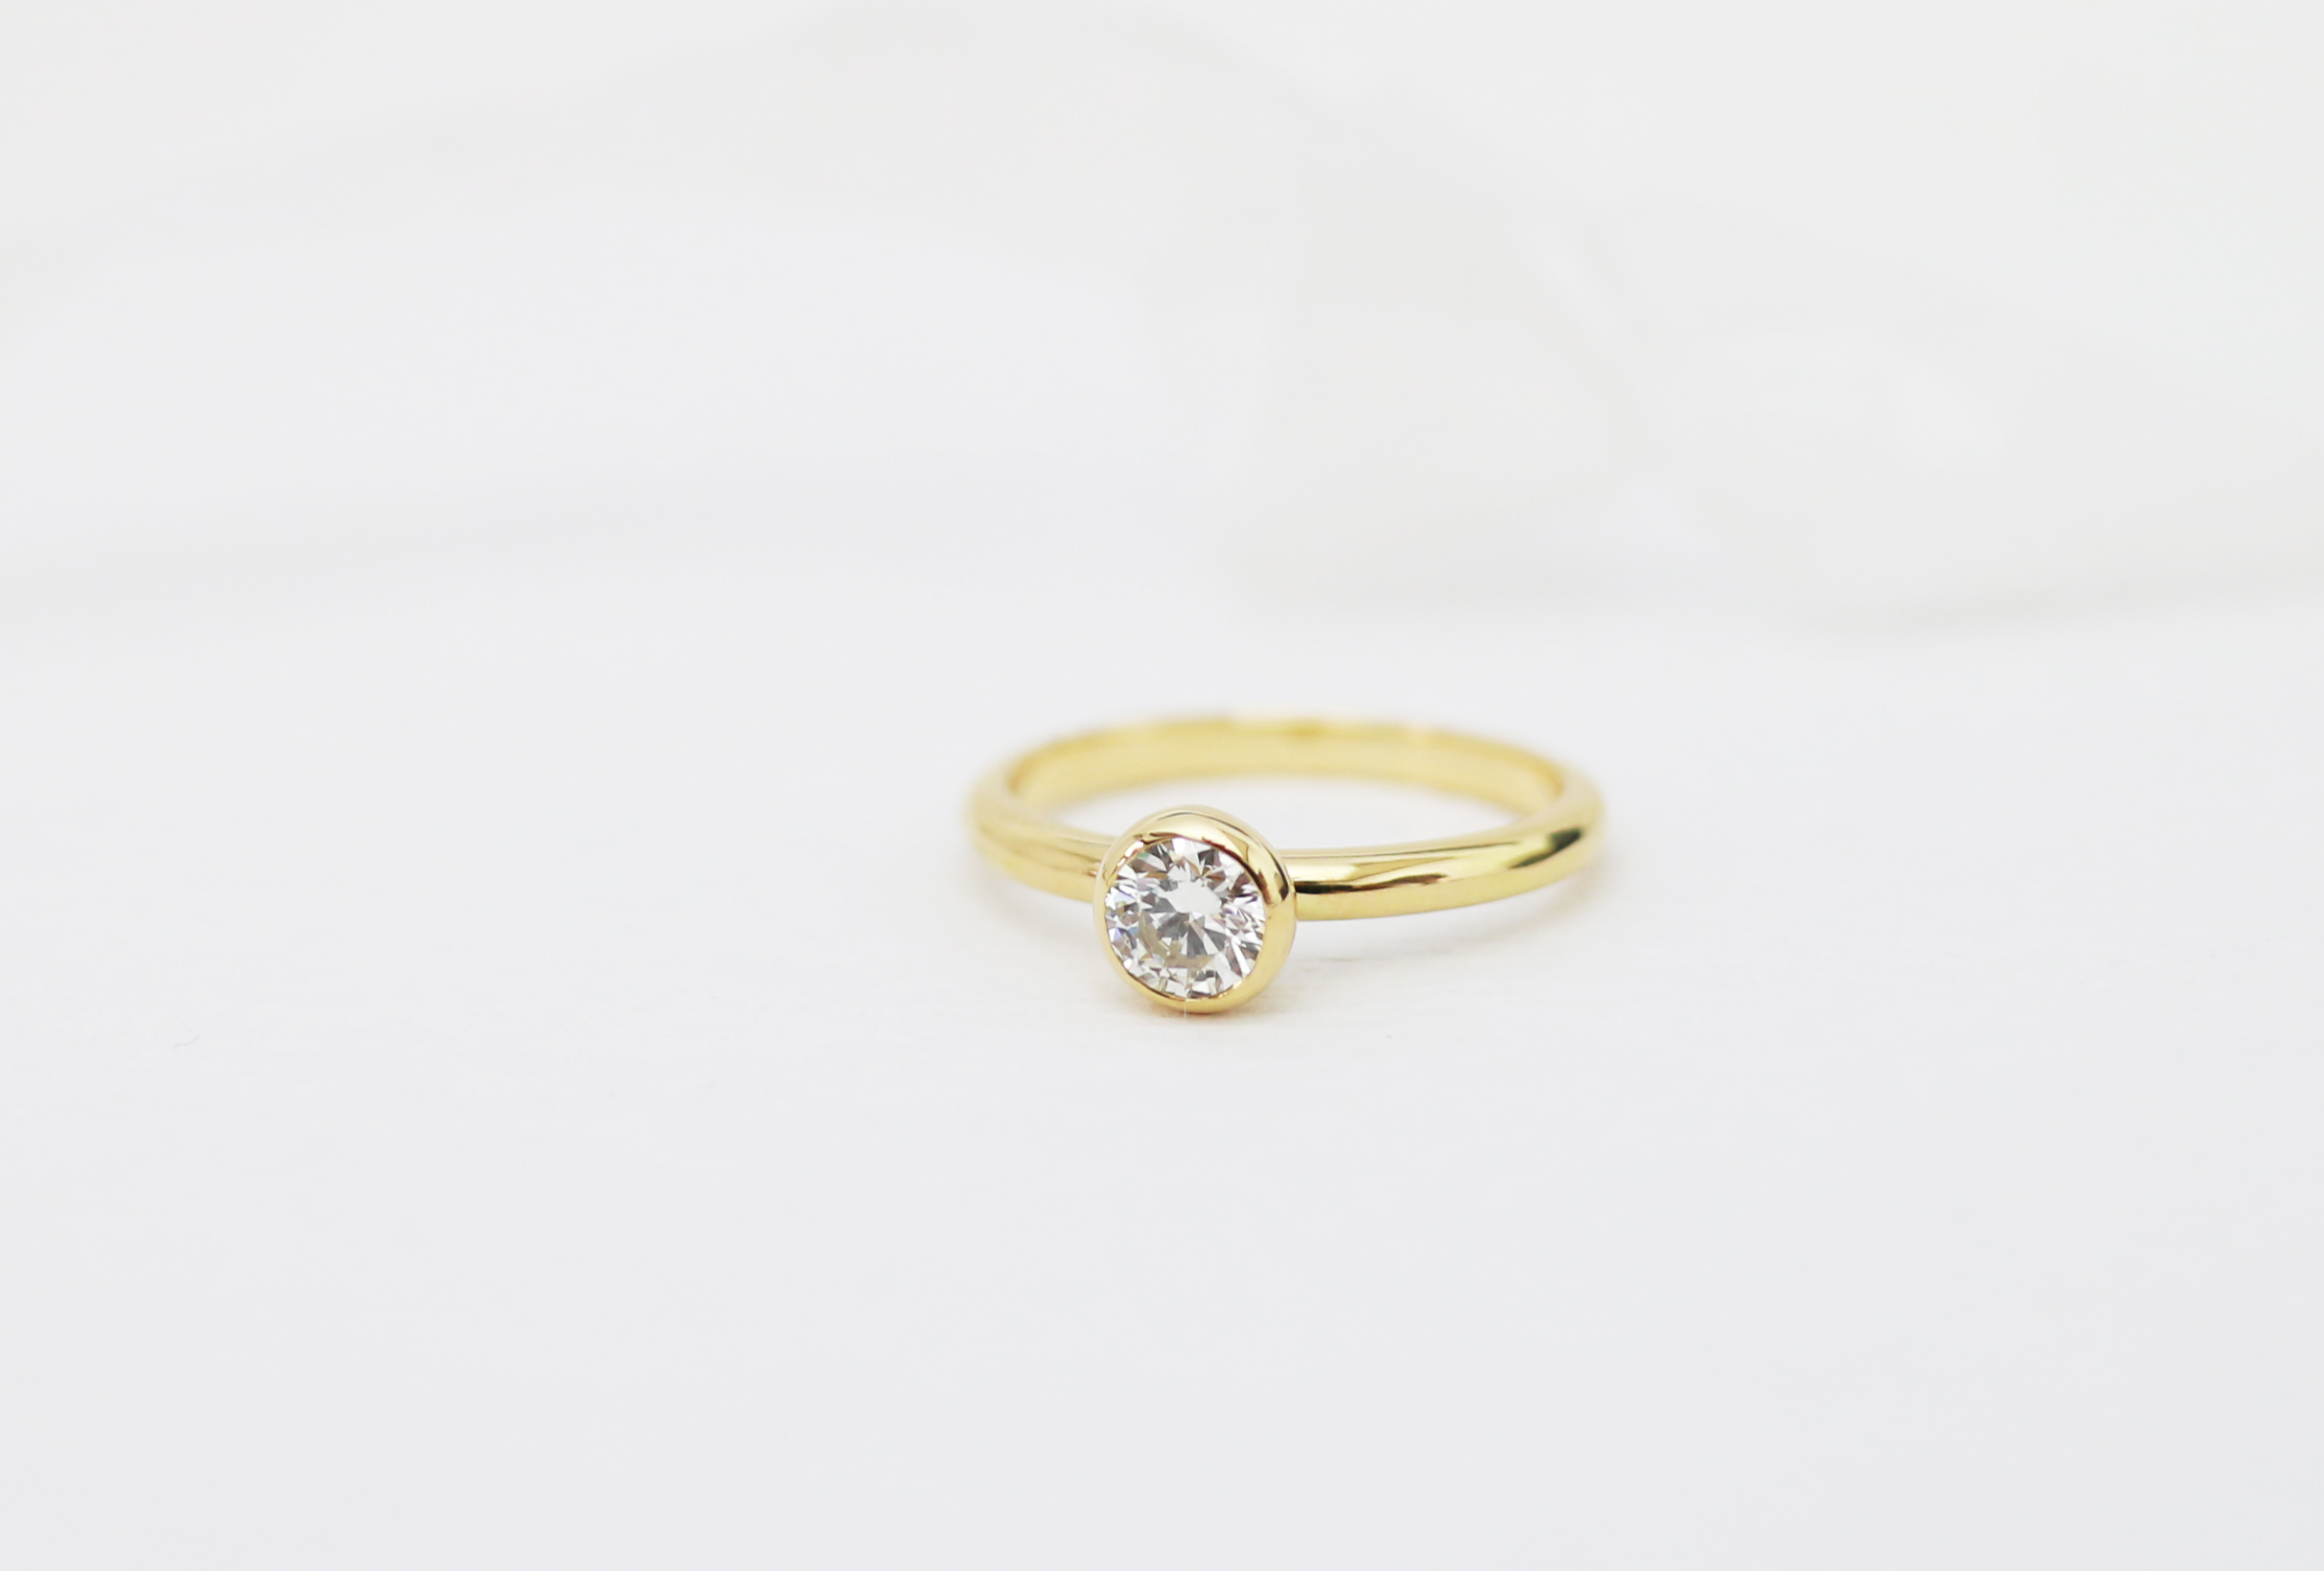 K18イエローゴールドの婚約指輪